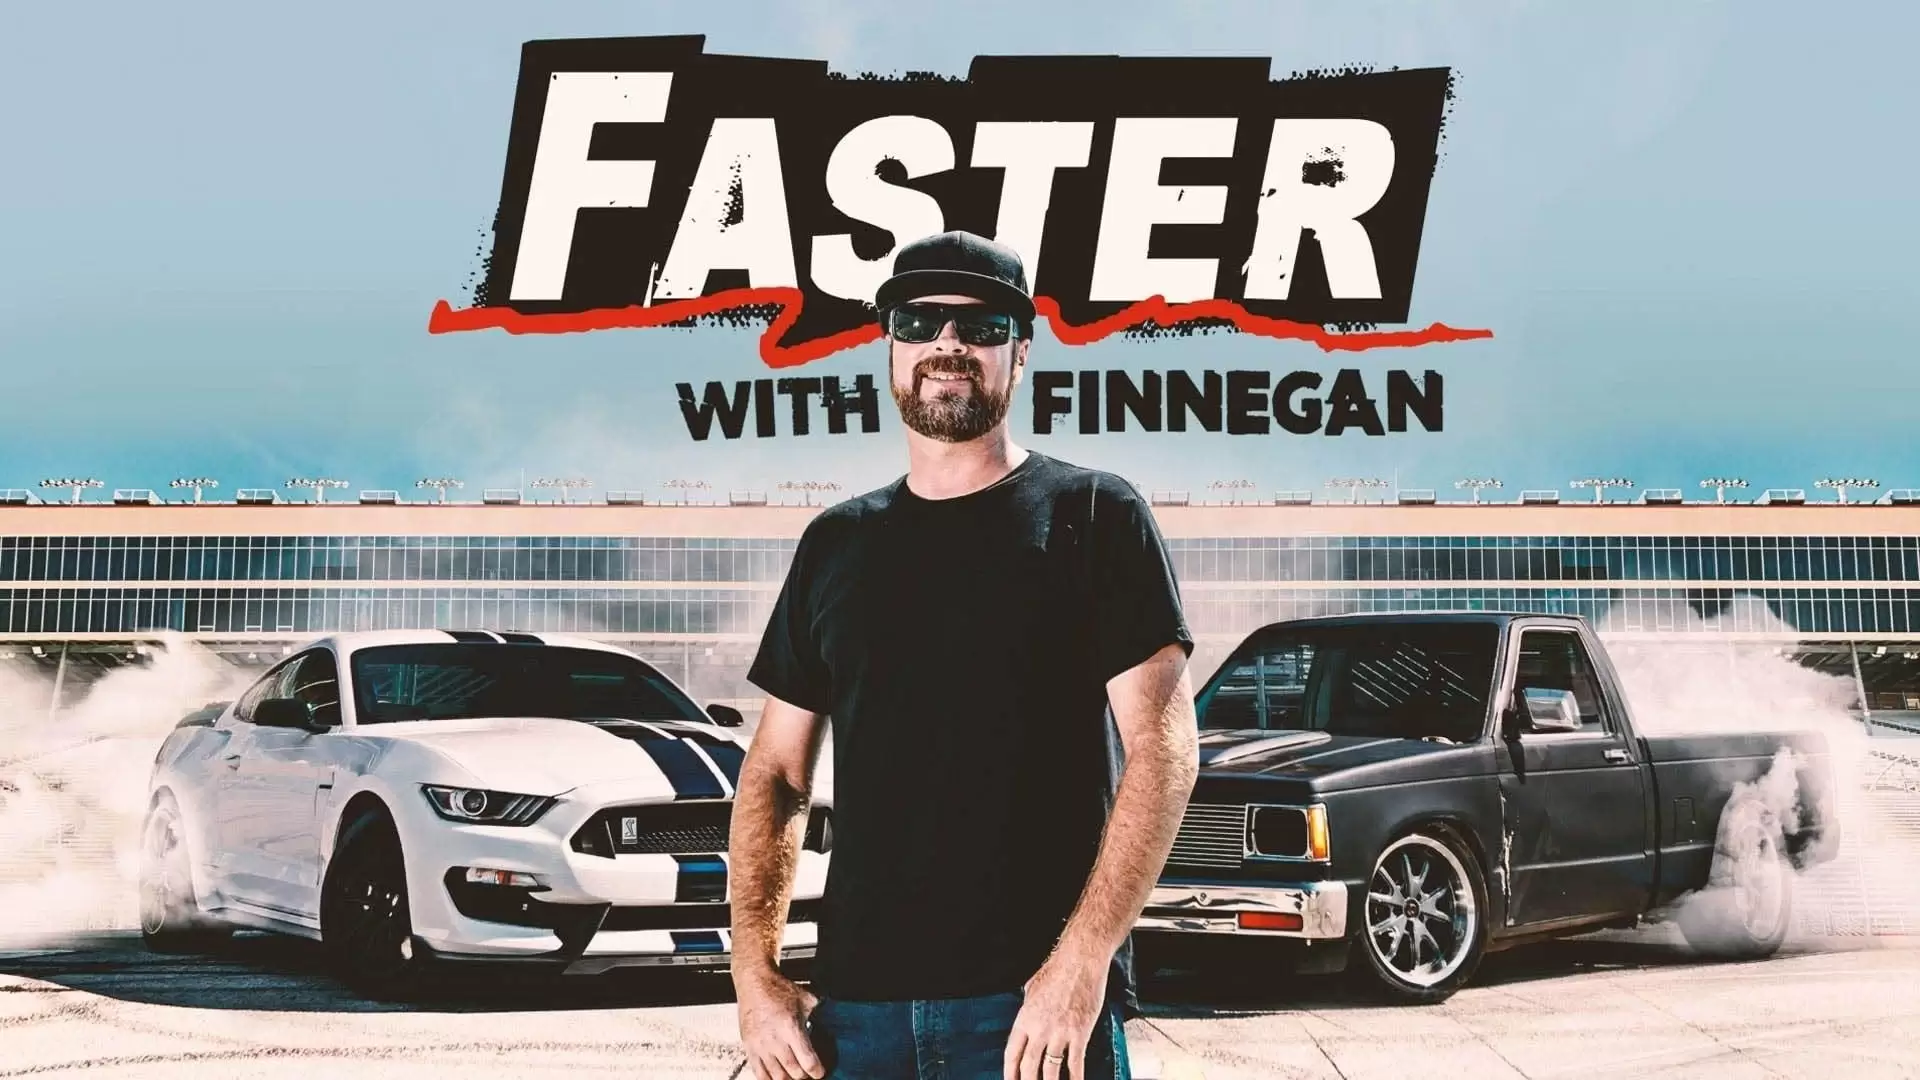 دانلود سریال Faster with Finnegan 2020 (با فینگان سریعتر)